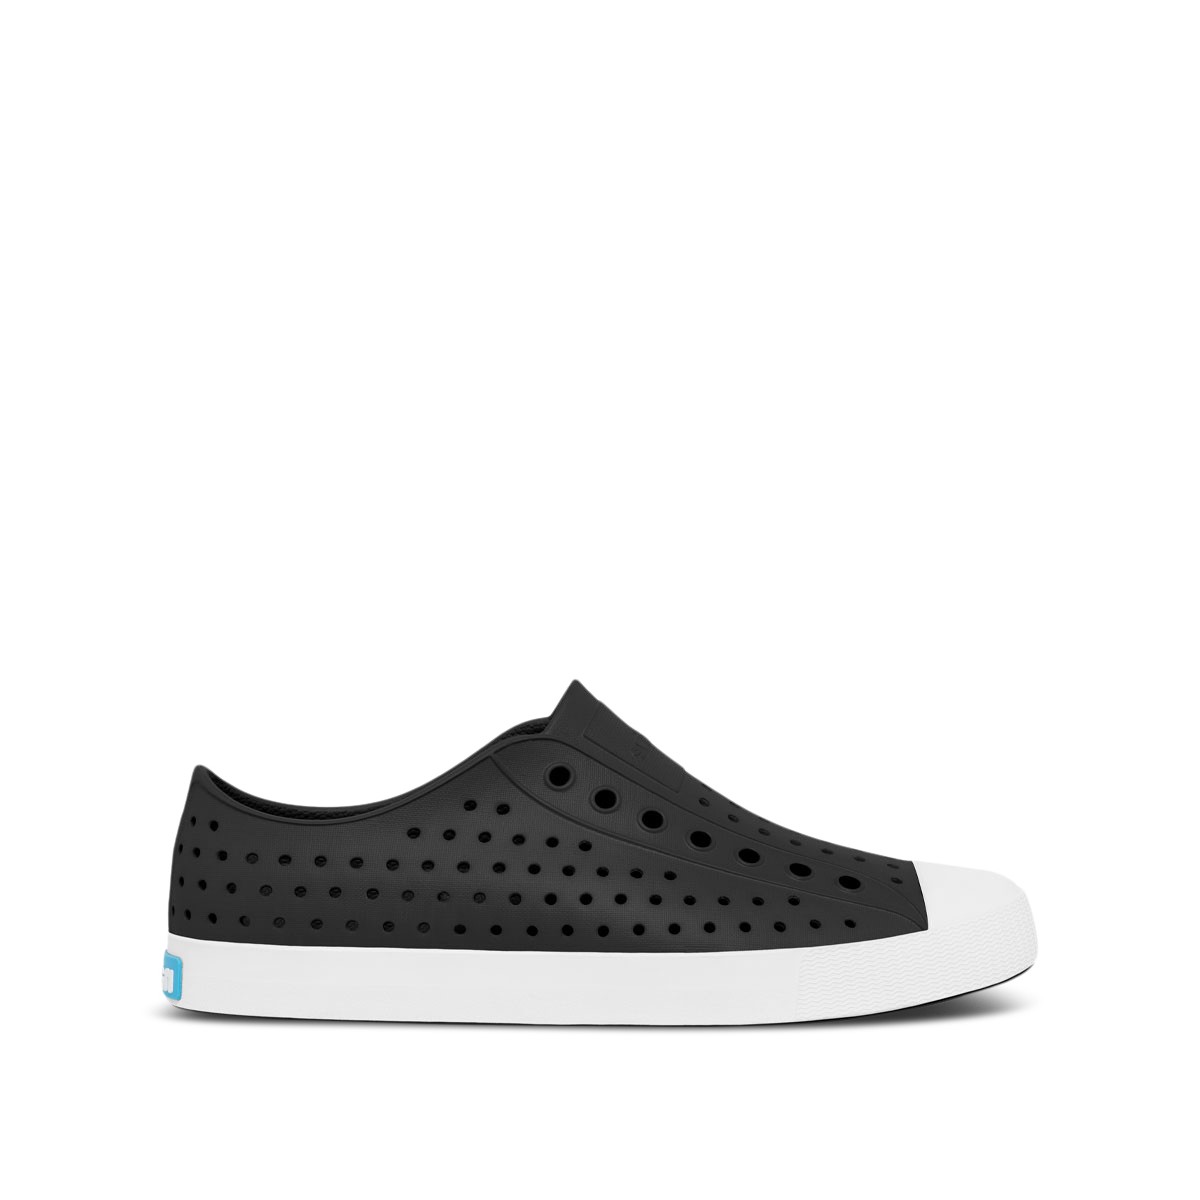 Women's Jefferson Slip-On Shoes in Black/White